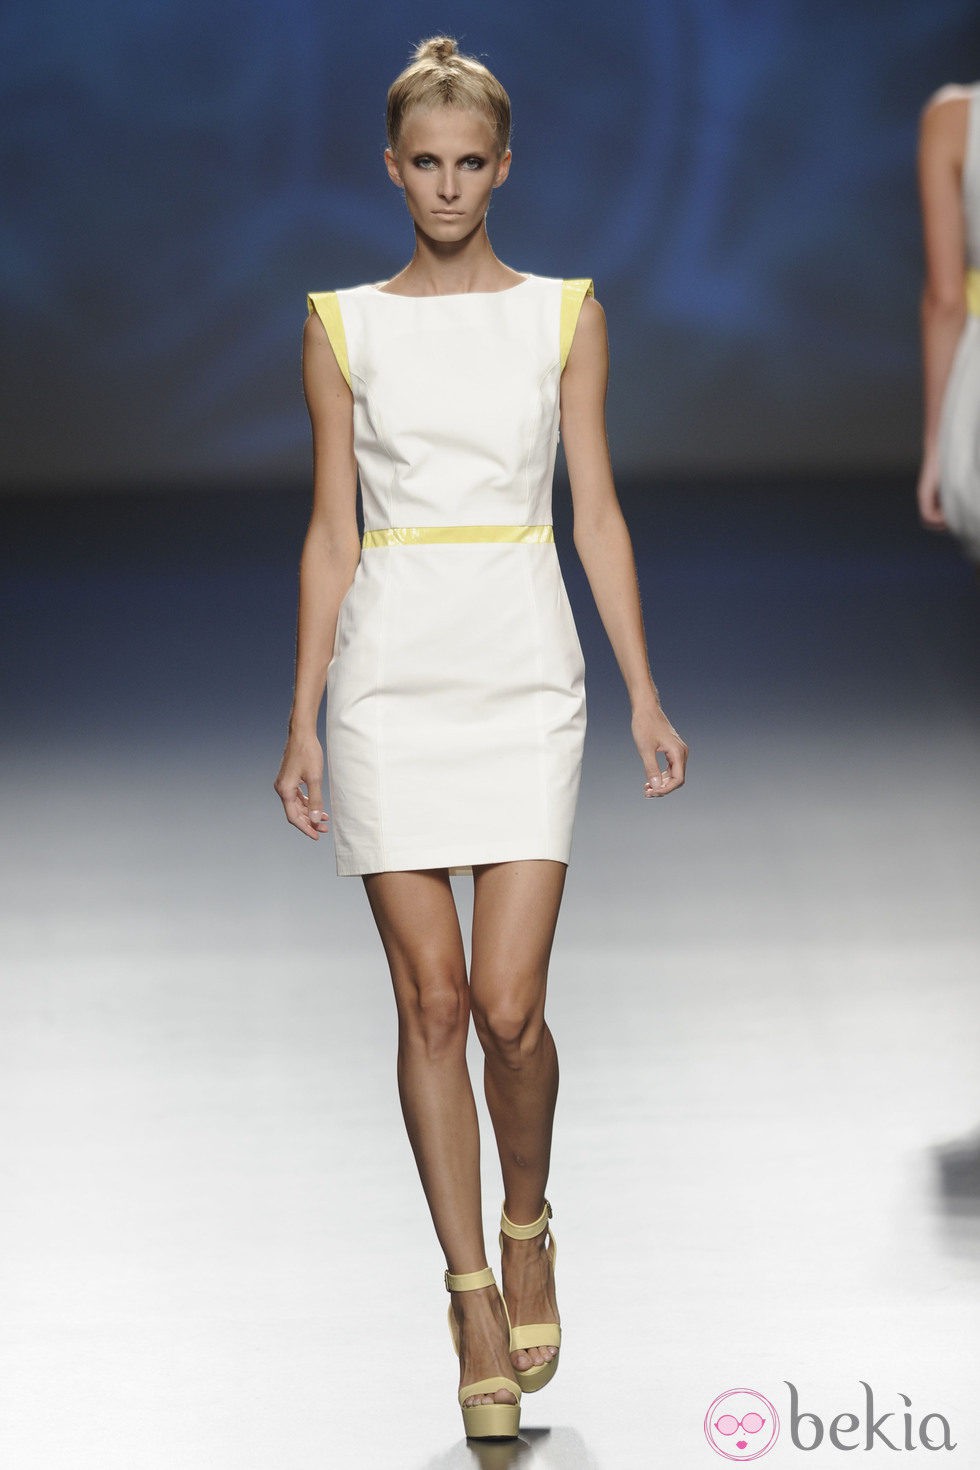 Vestido corto con detalles amarillos de la colección primavera/verano 2013 de Sara Coleman